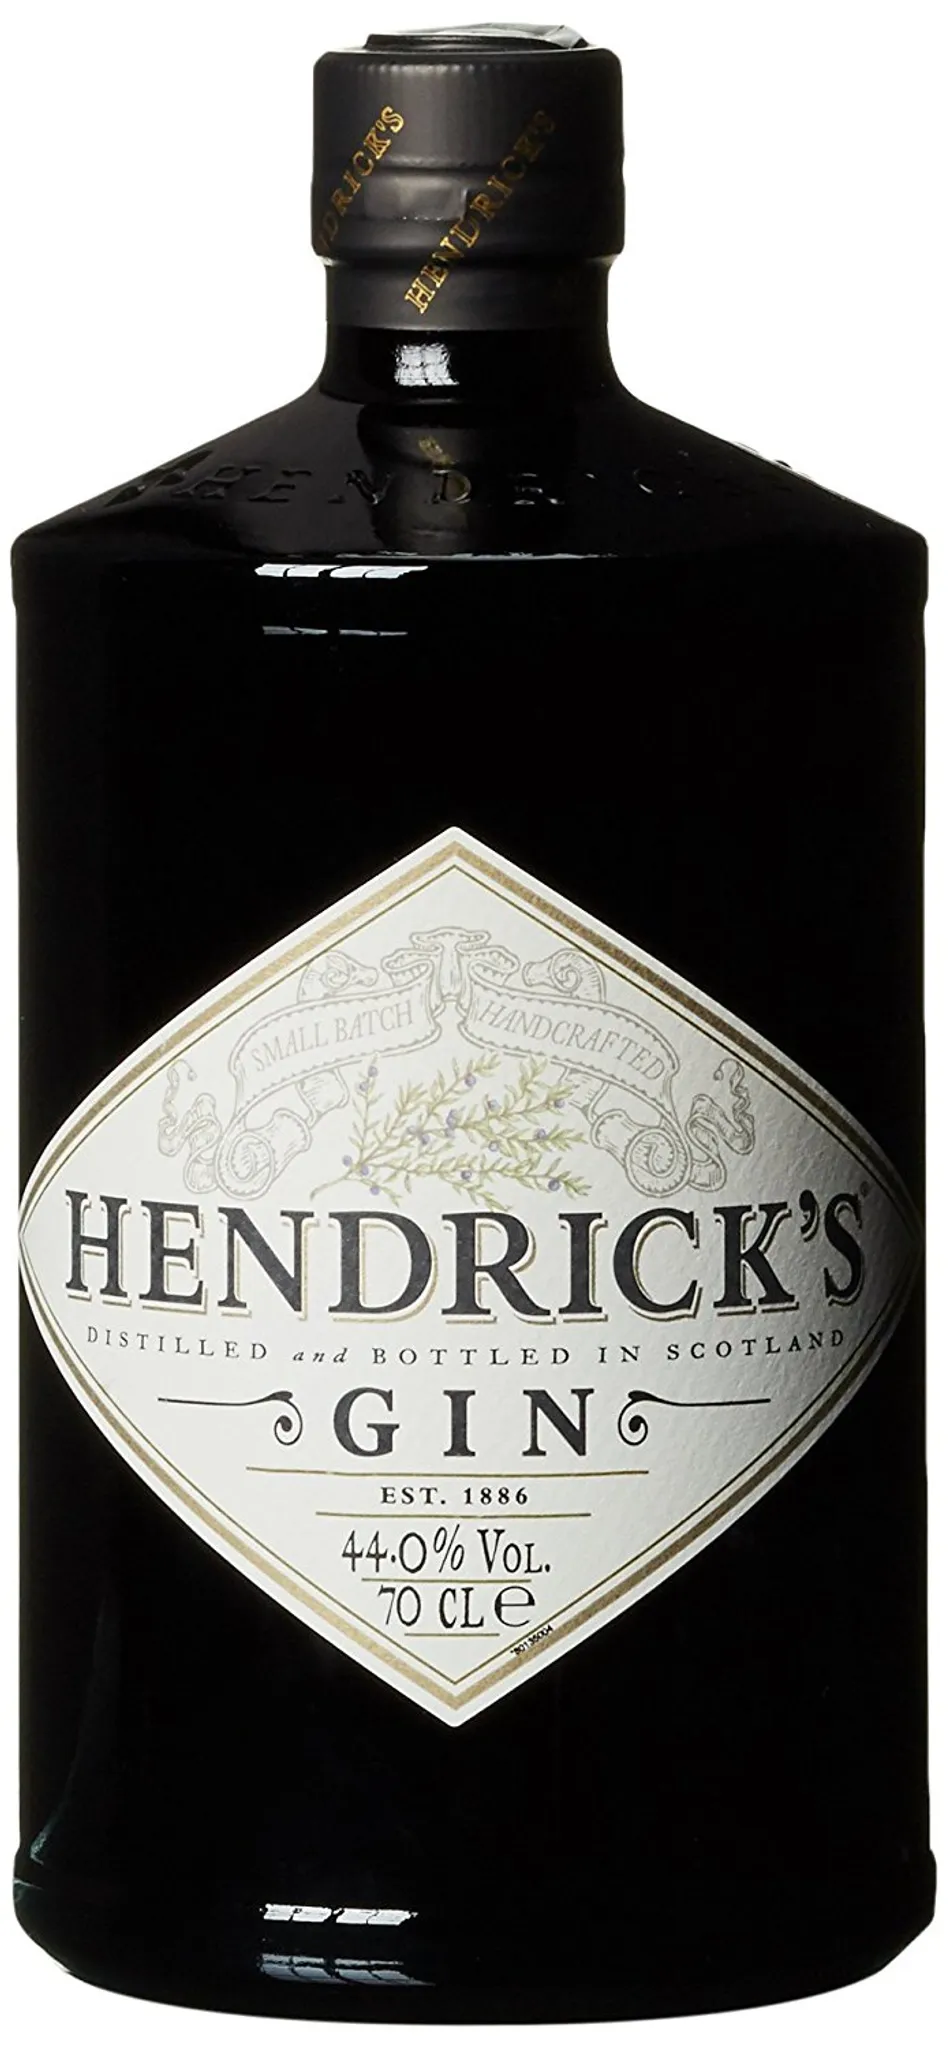 Hendricks Gin and Bottled in Distilled